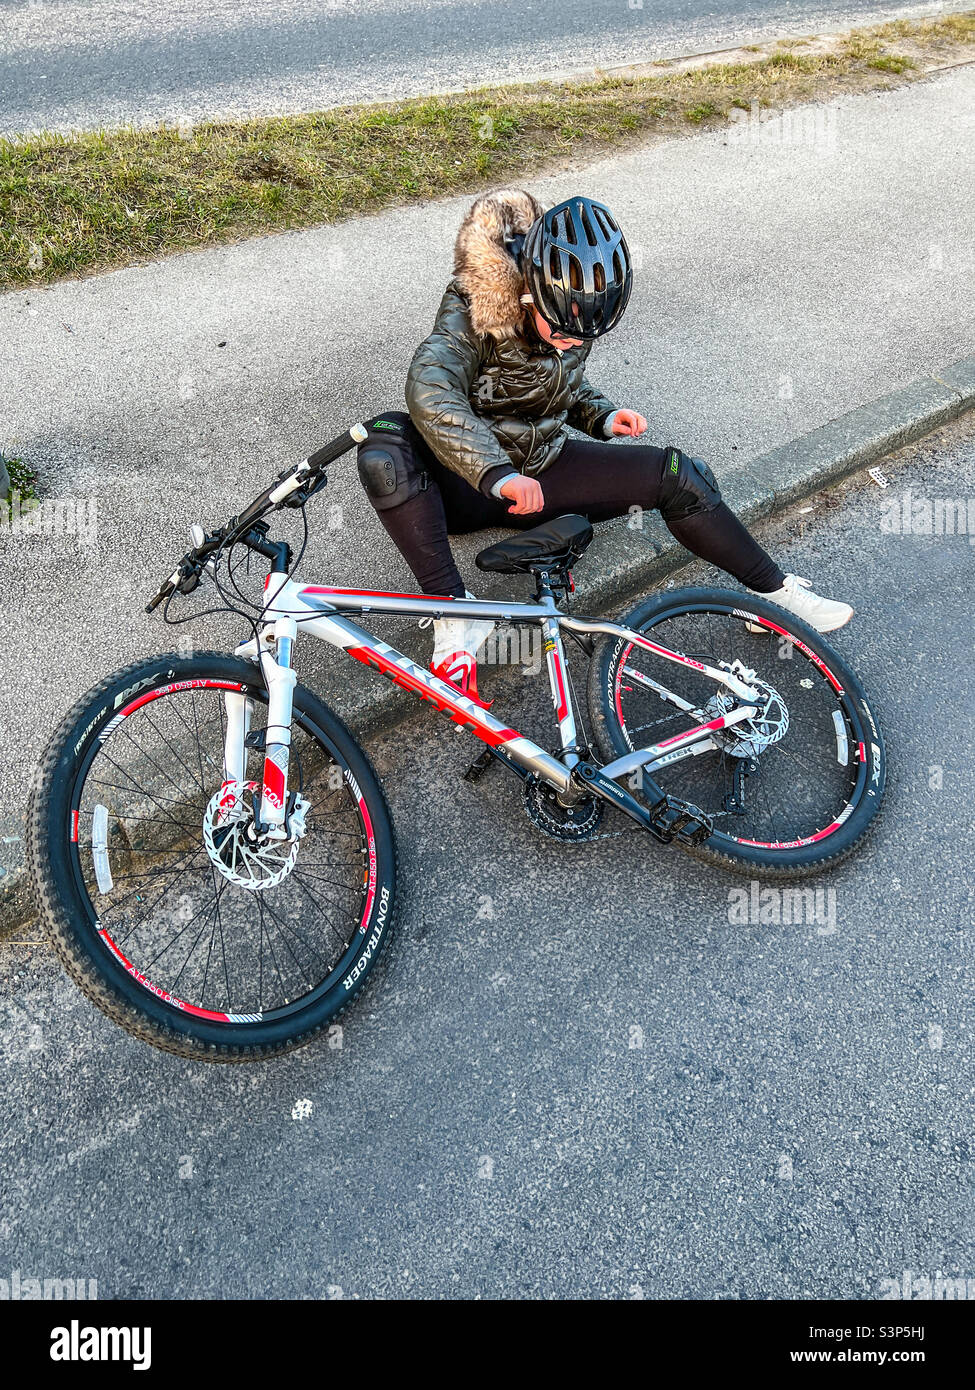 Une jeune fille vient de tomber de son vélo Banque D'Images